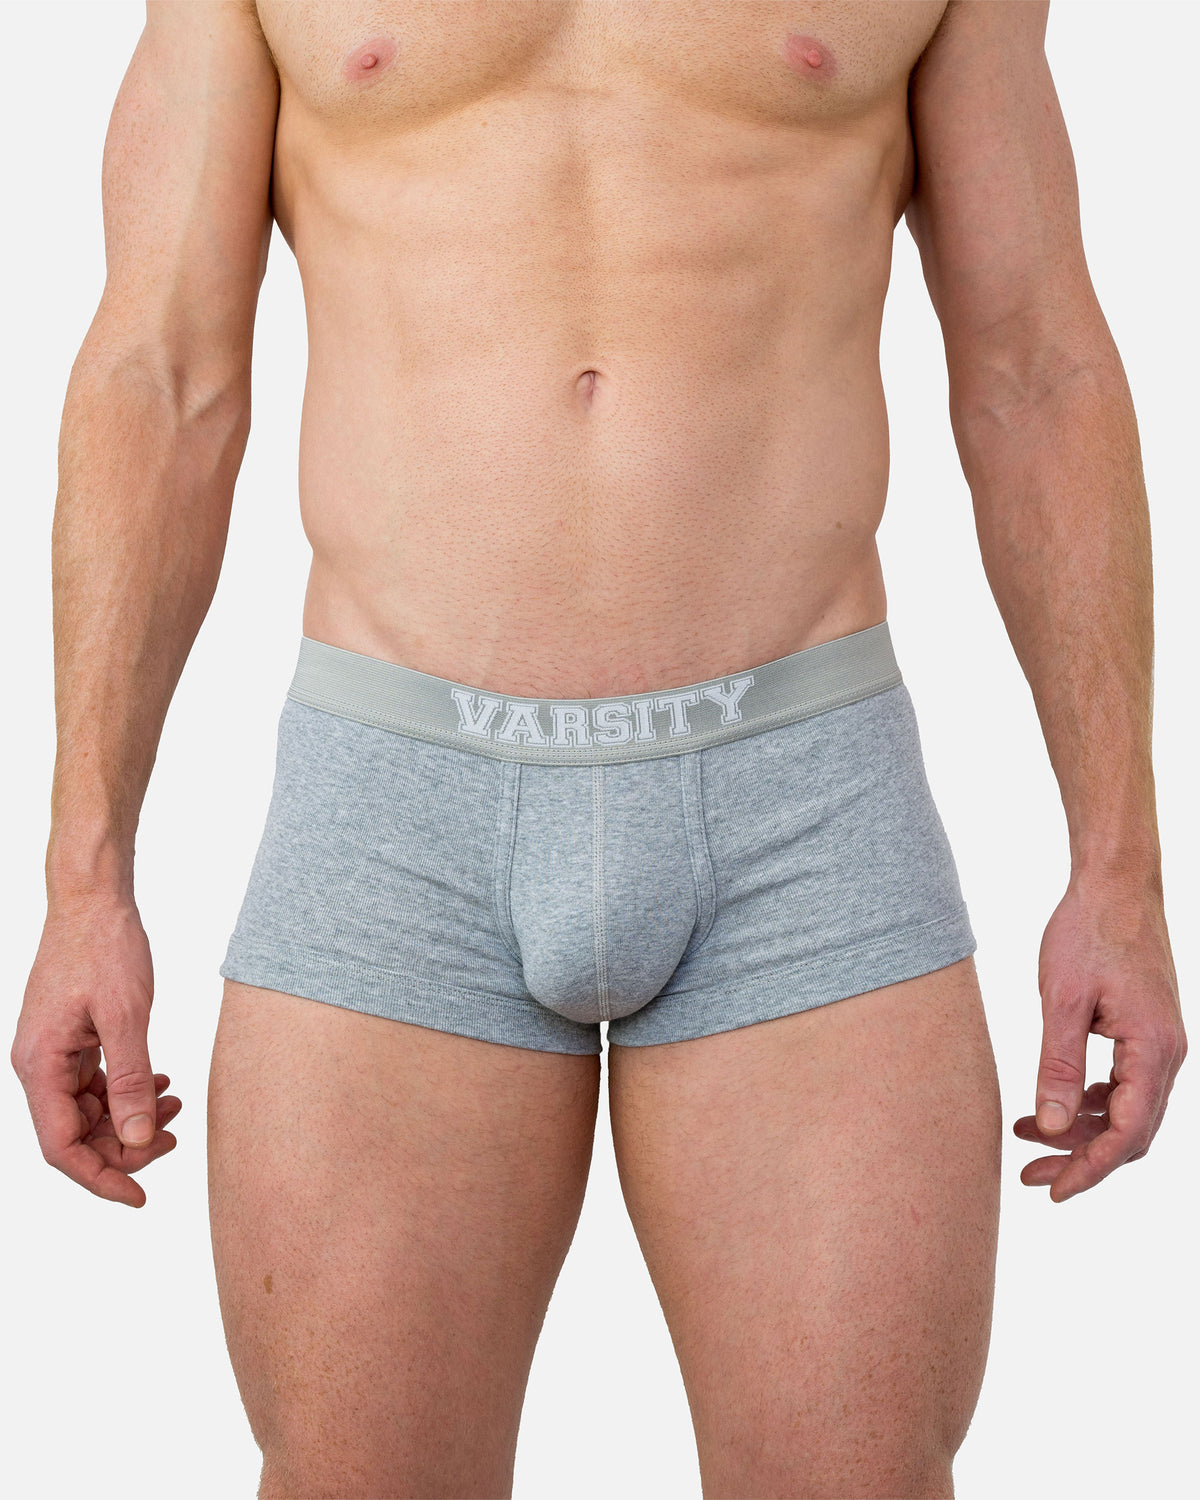 Coral Shorts – PUMP! Underwear